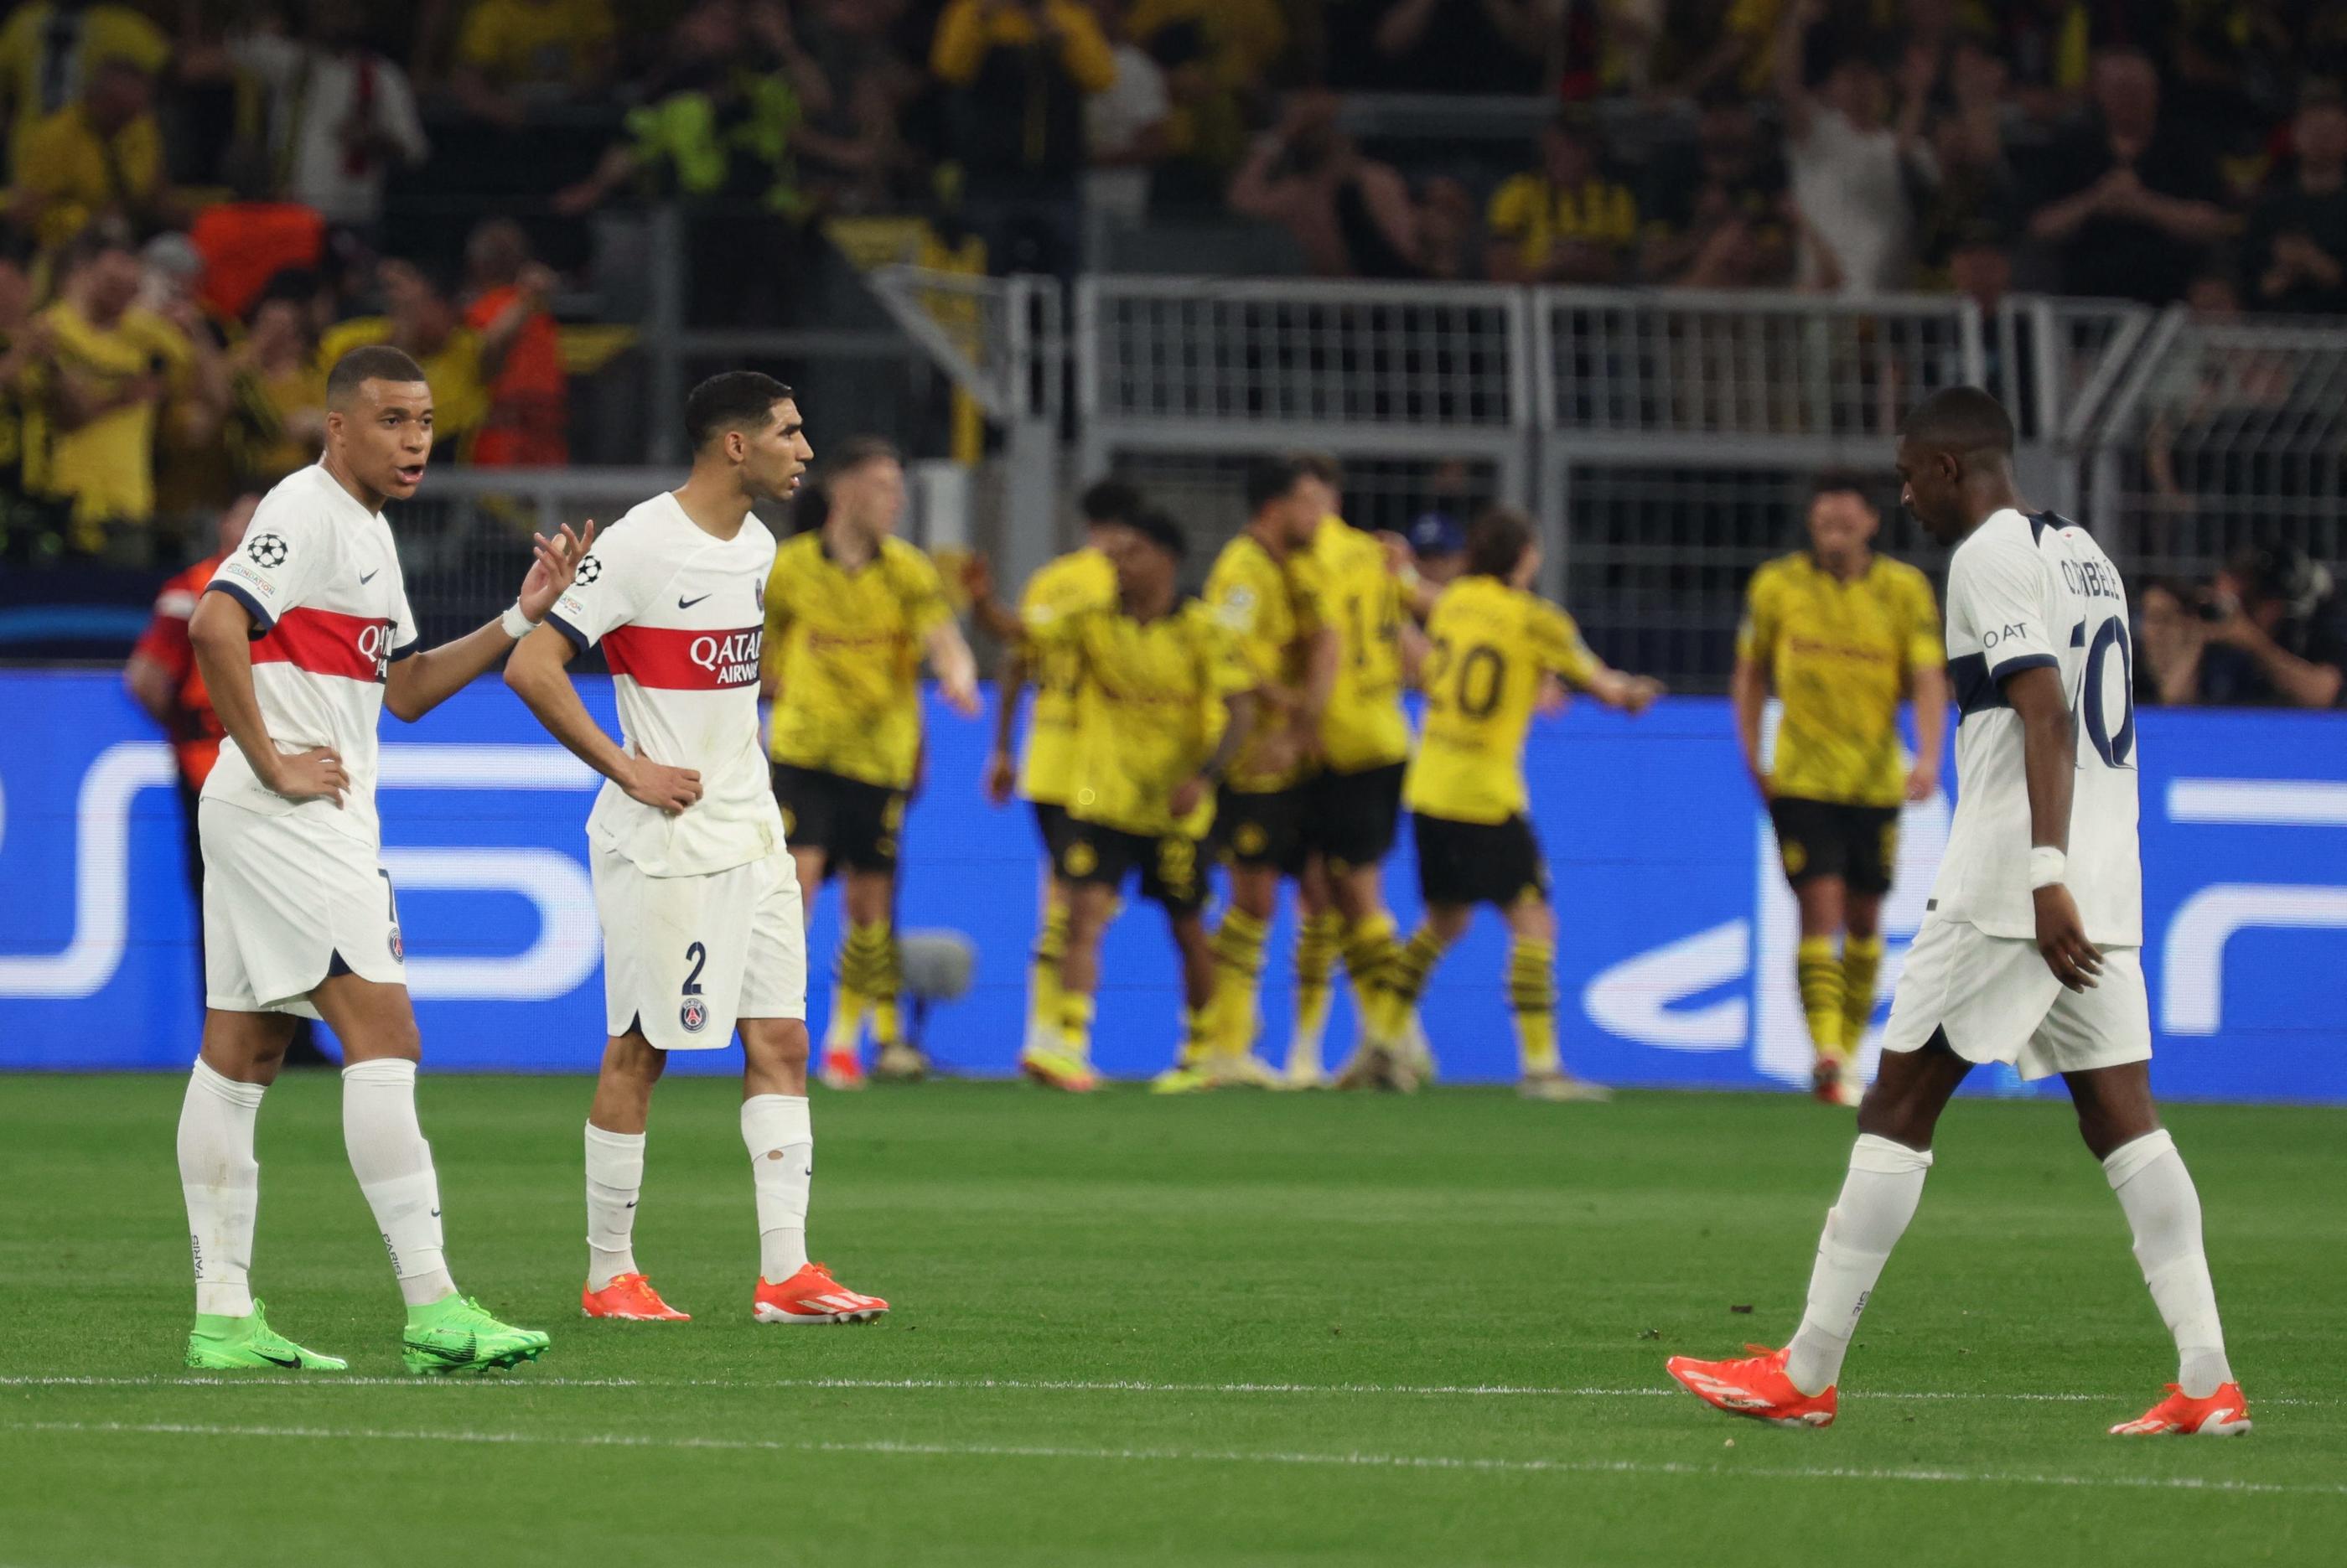 Le PSG de Mbappé, Hakimi et Dembélé a les moyens de faire mieux au match retour contre Dortmund. Et de se qualifier... LP/Arnaud Journois